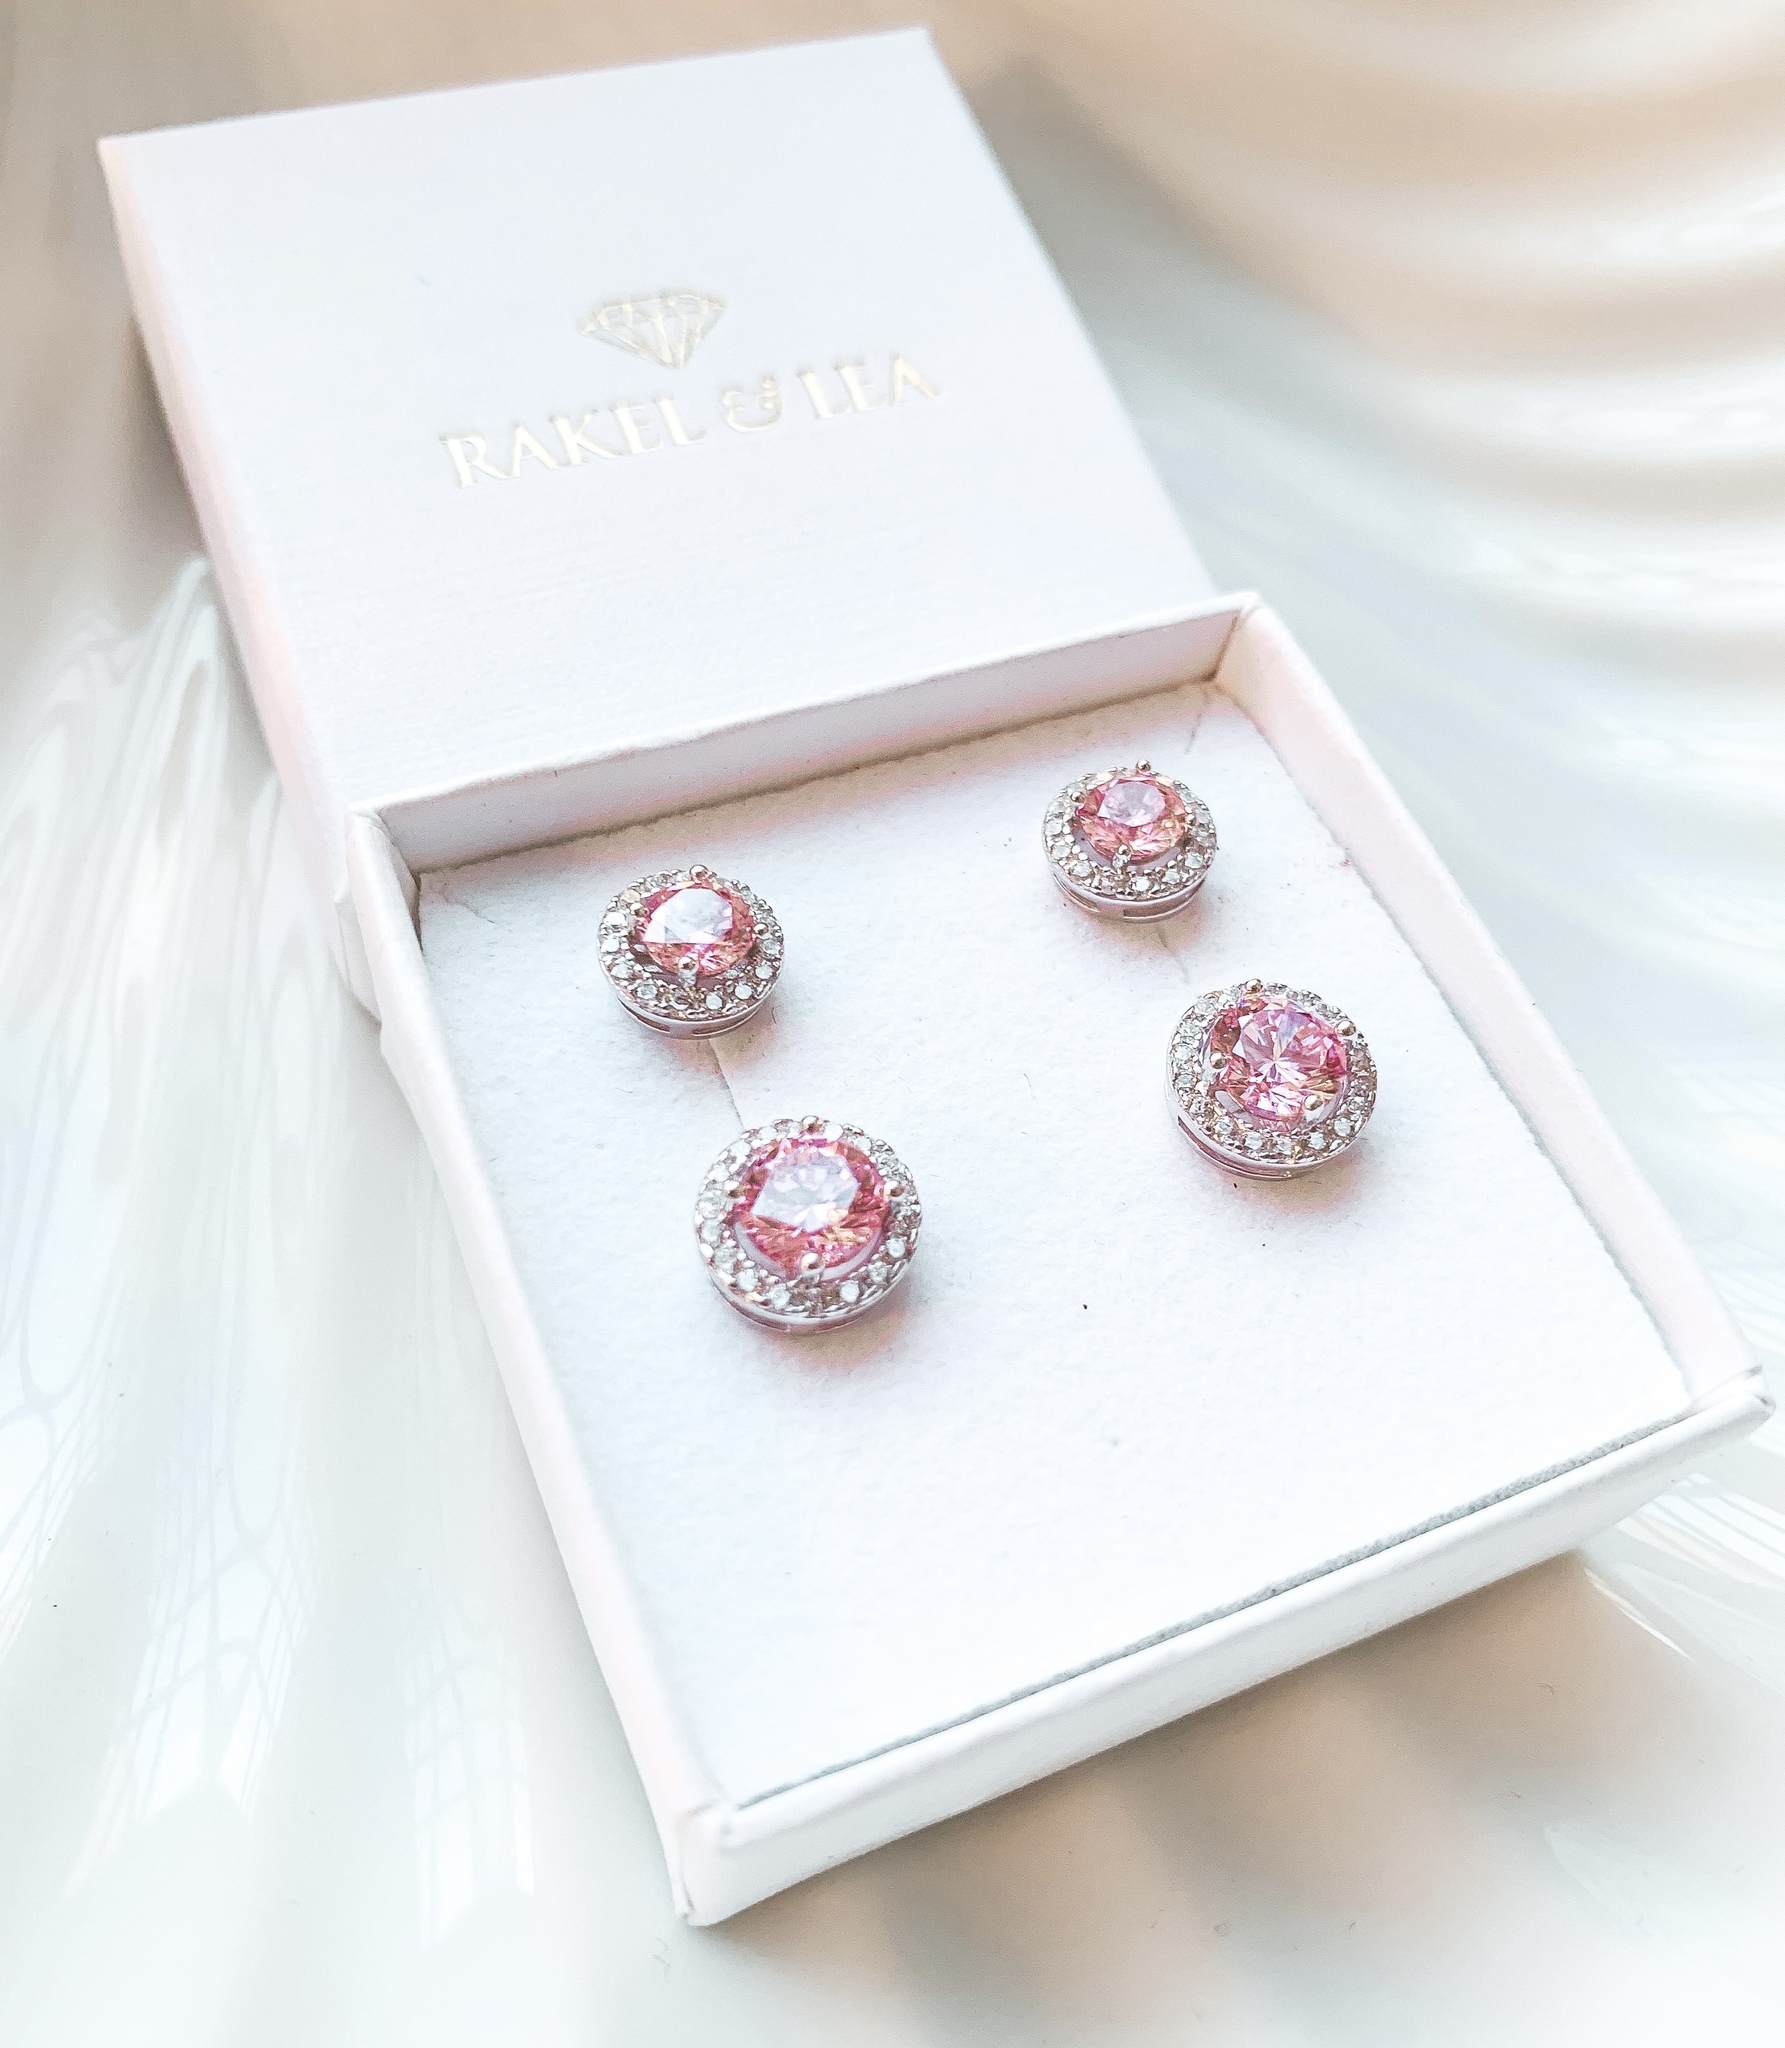 Pink Carmosé Earrings Silver